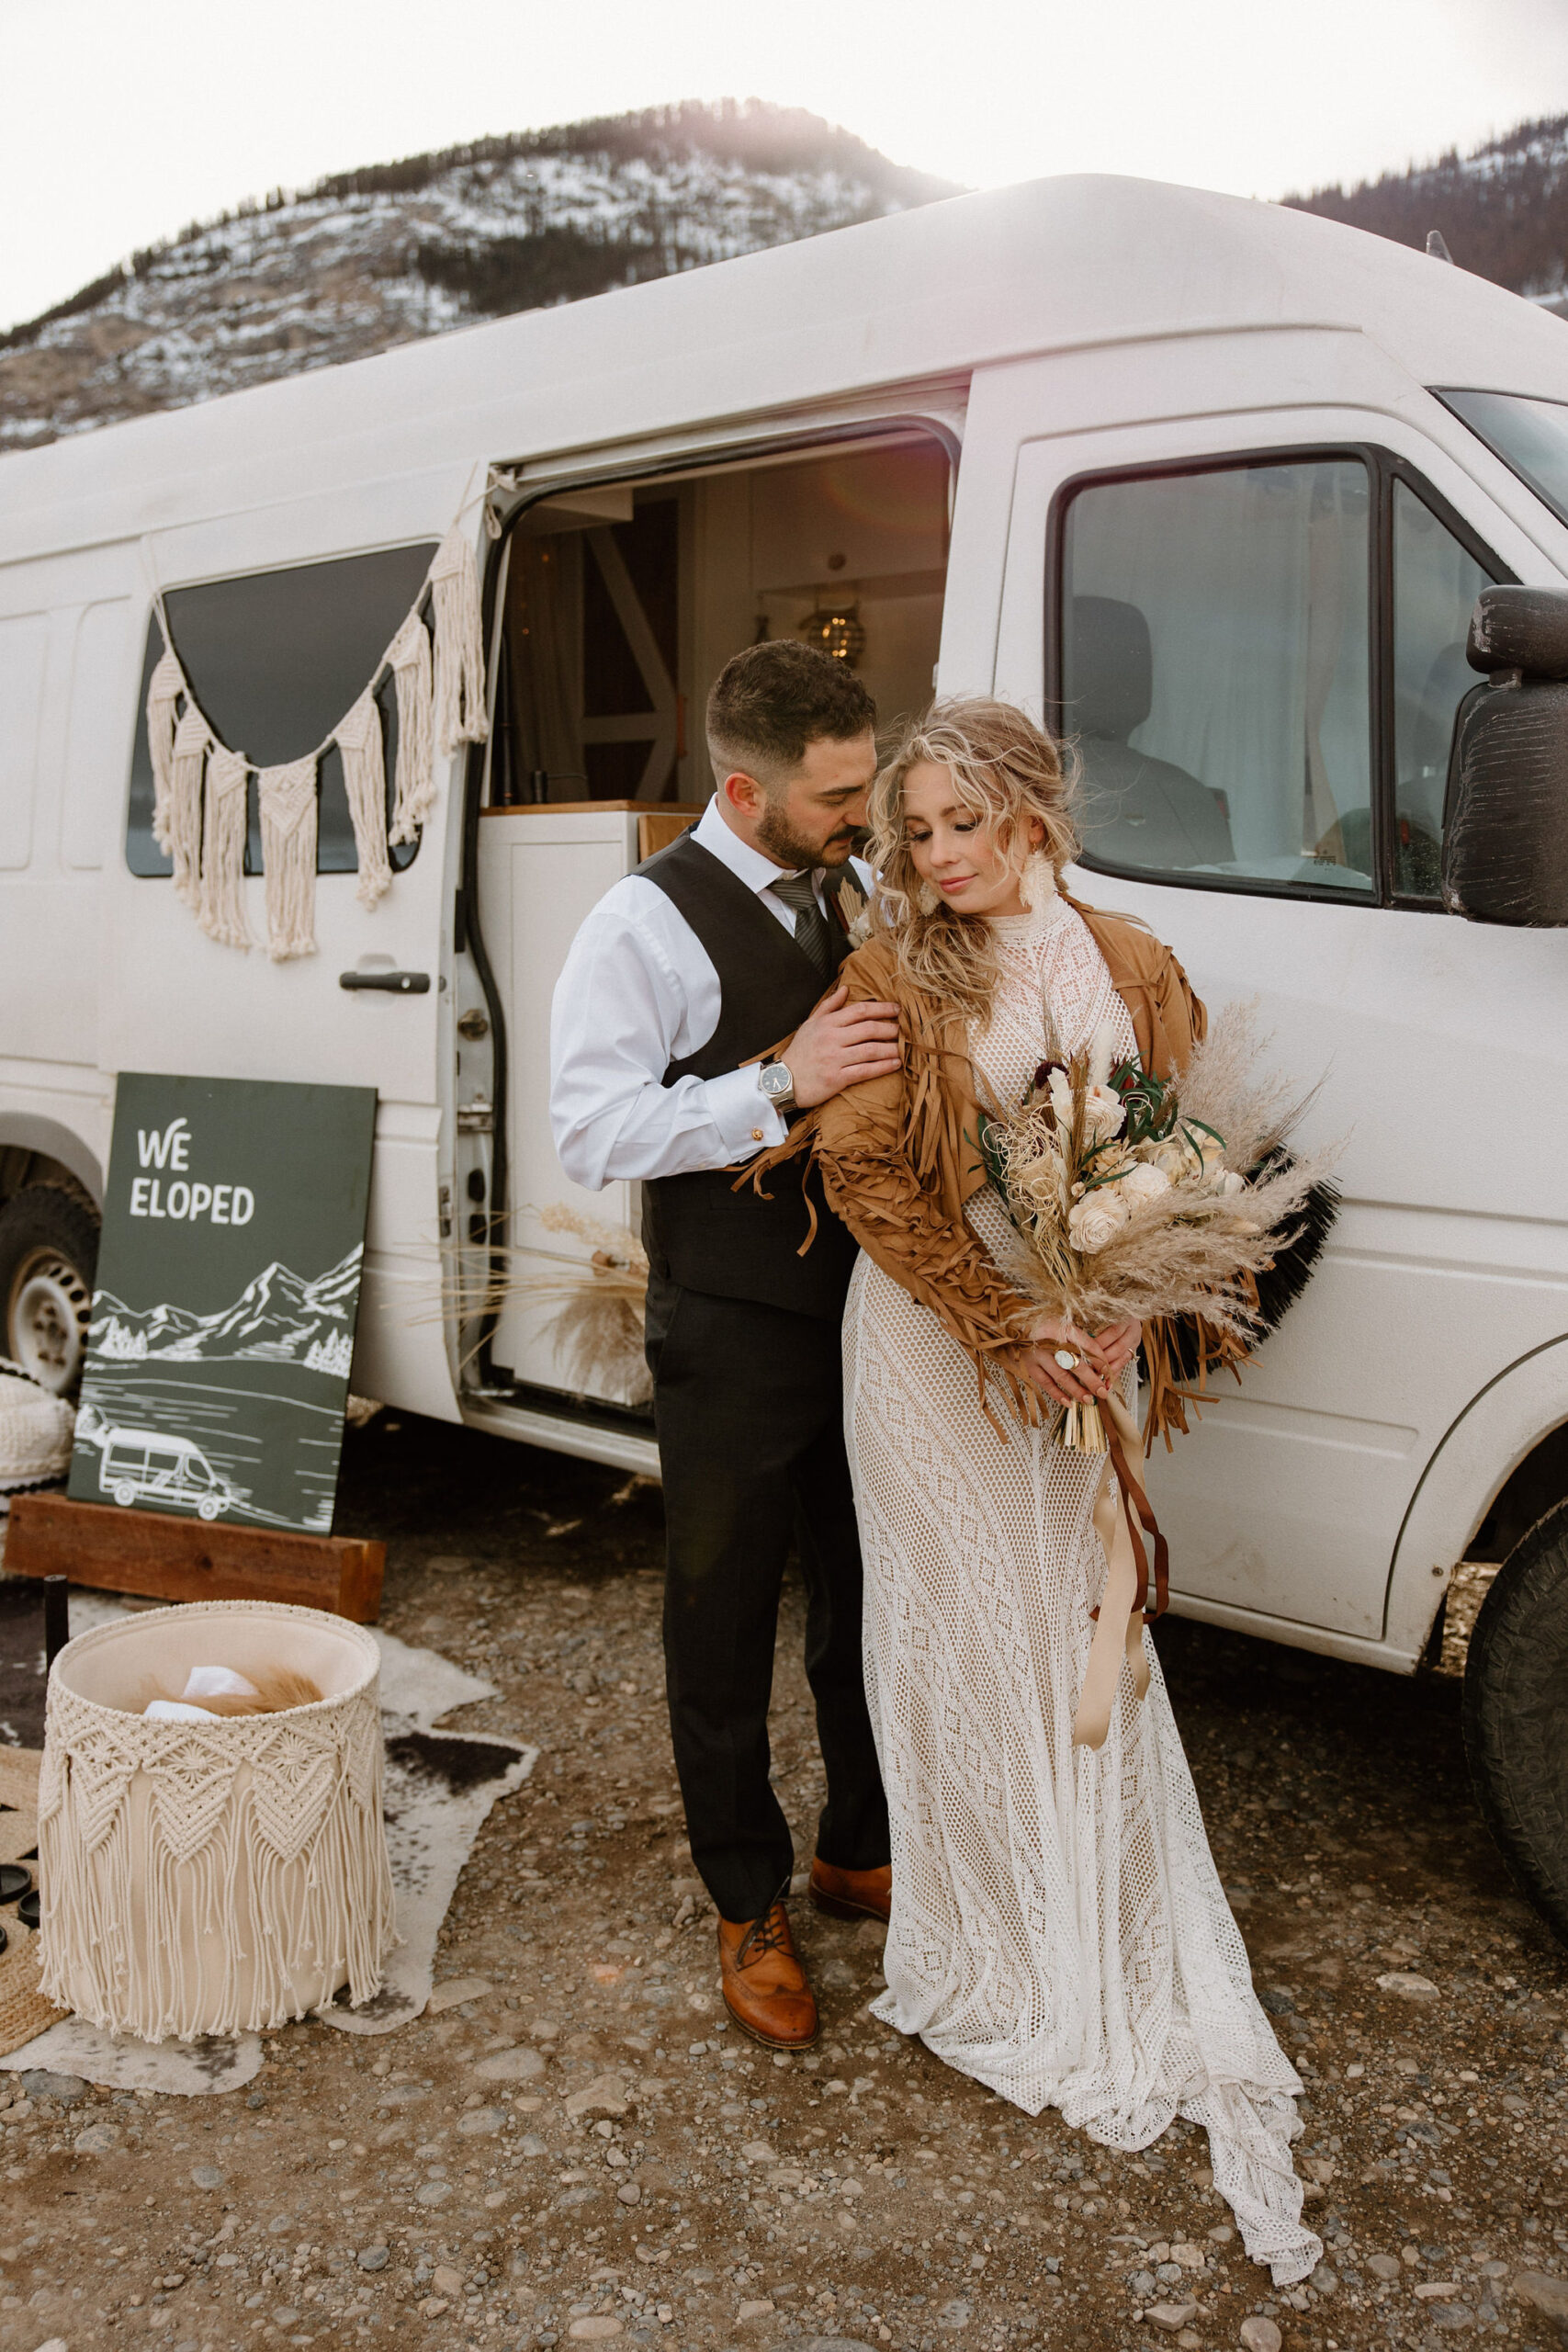 Camper Van Elopement Wedding Husband and Wife in Wedding Formal